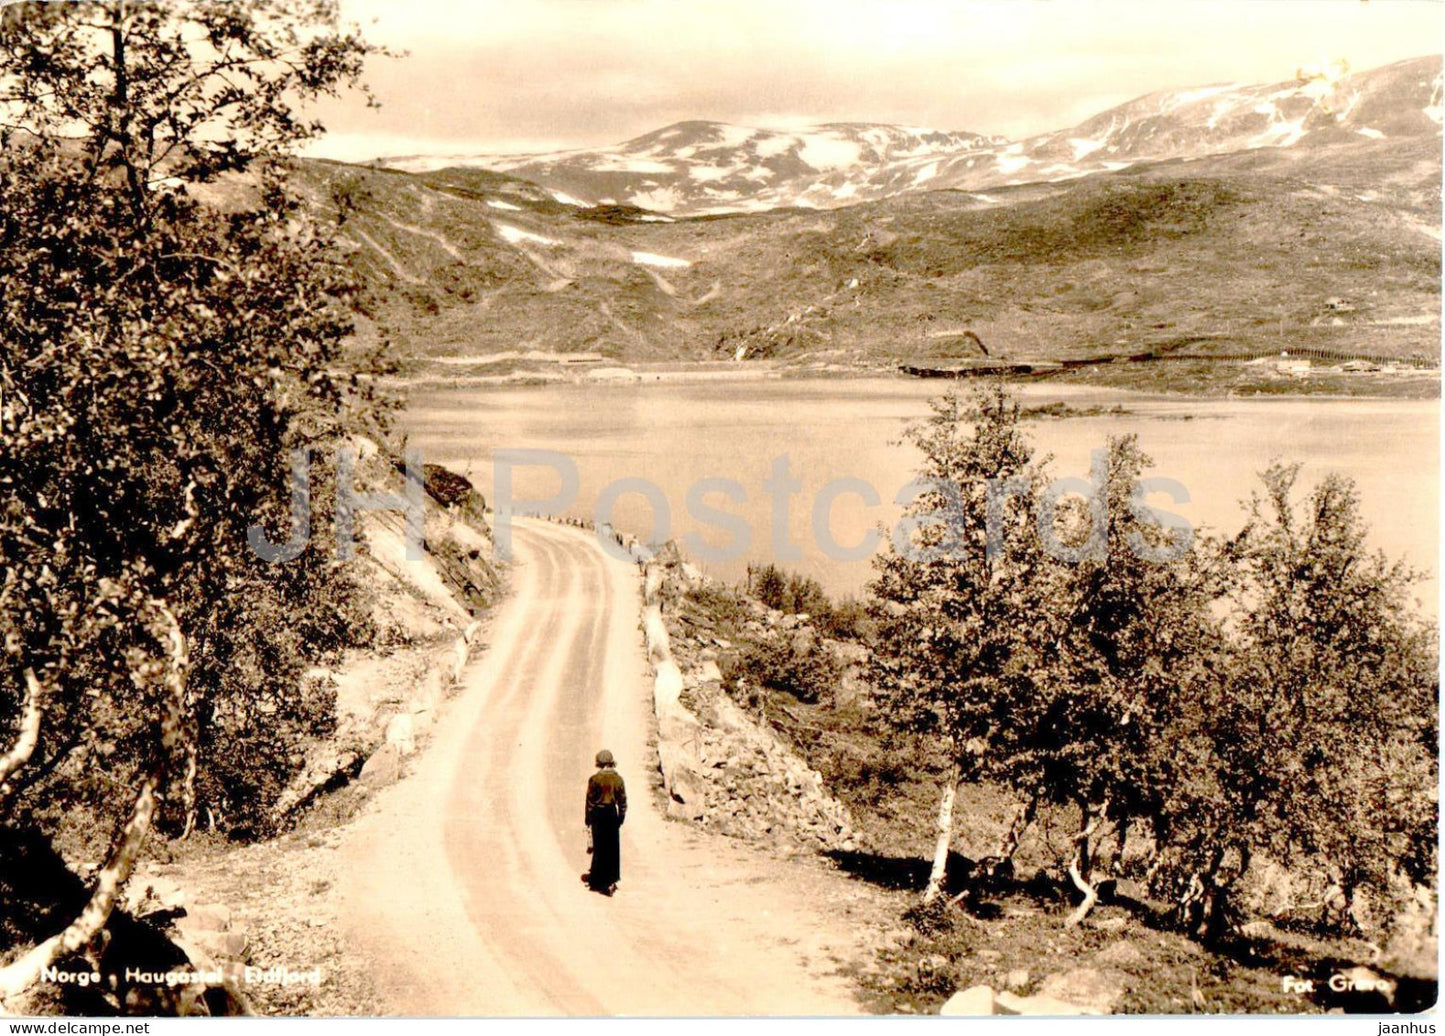 Haugastel - Eldfjord - old postcard - 1956 - Norway - used